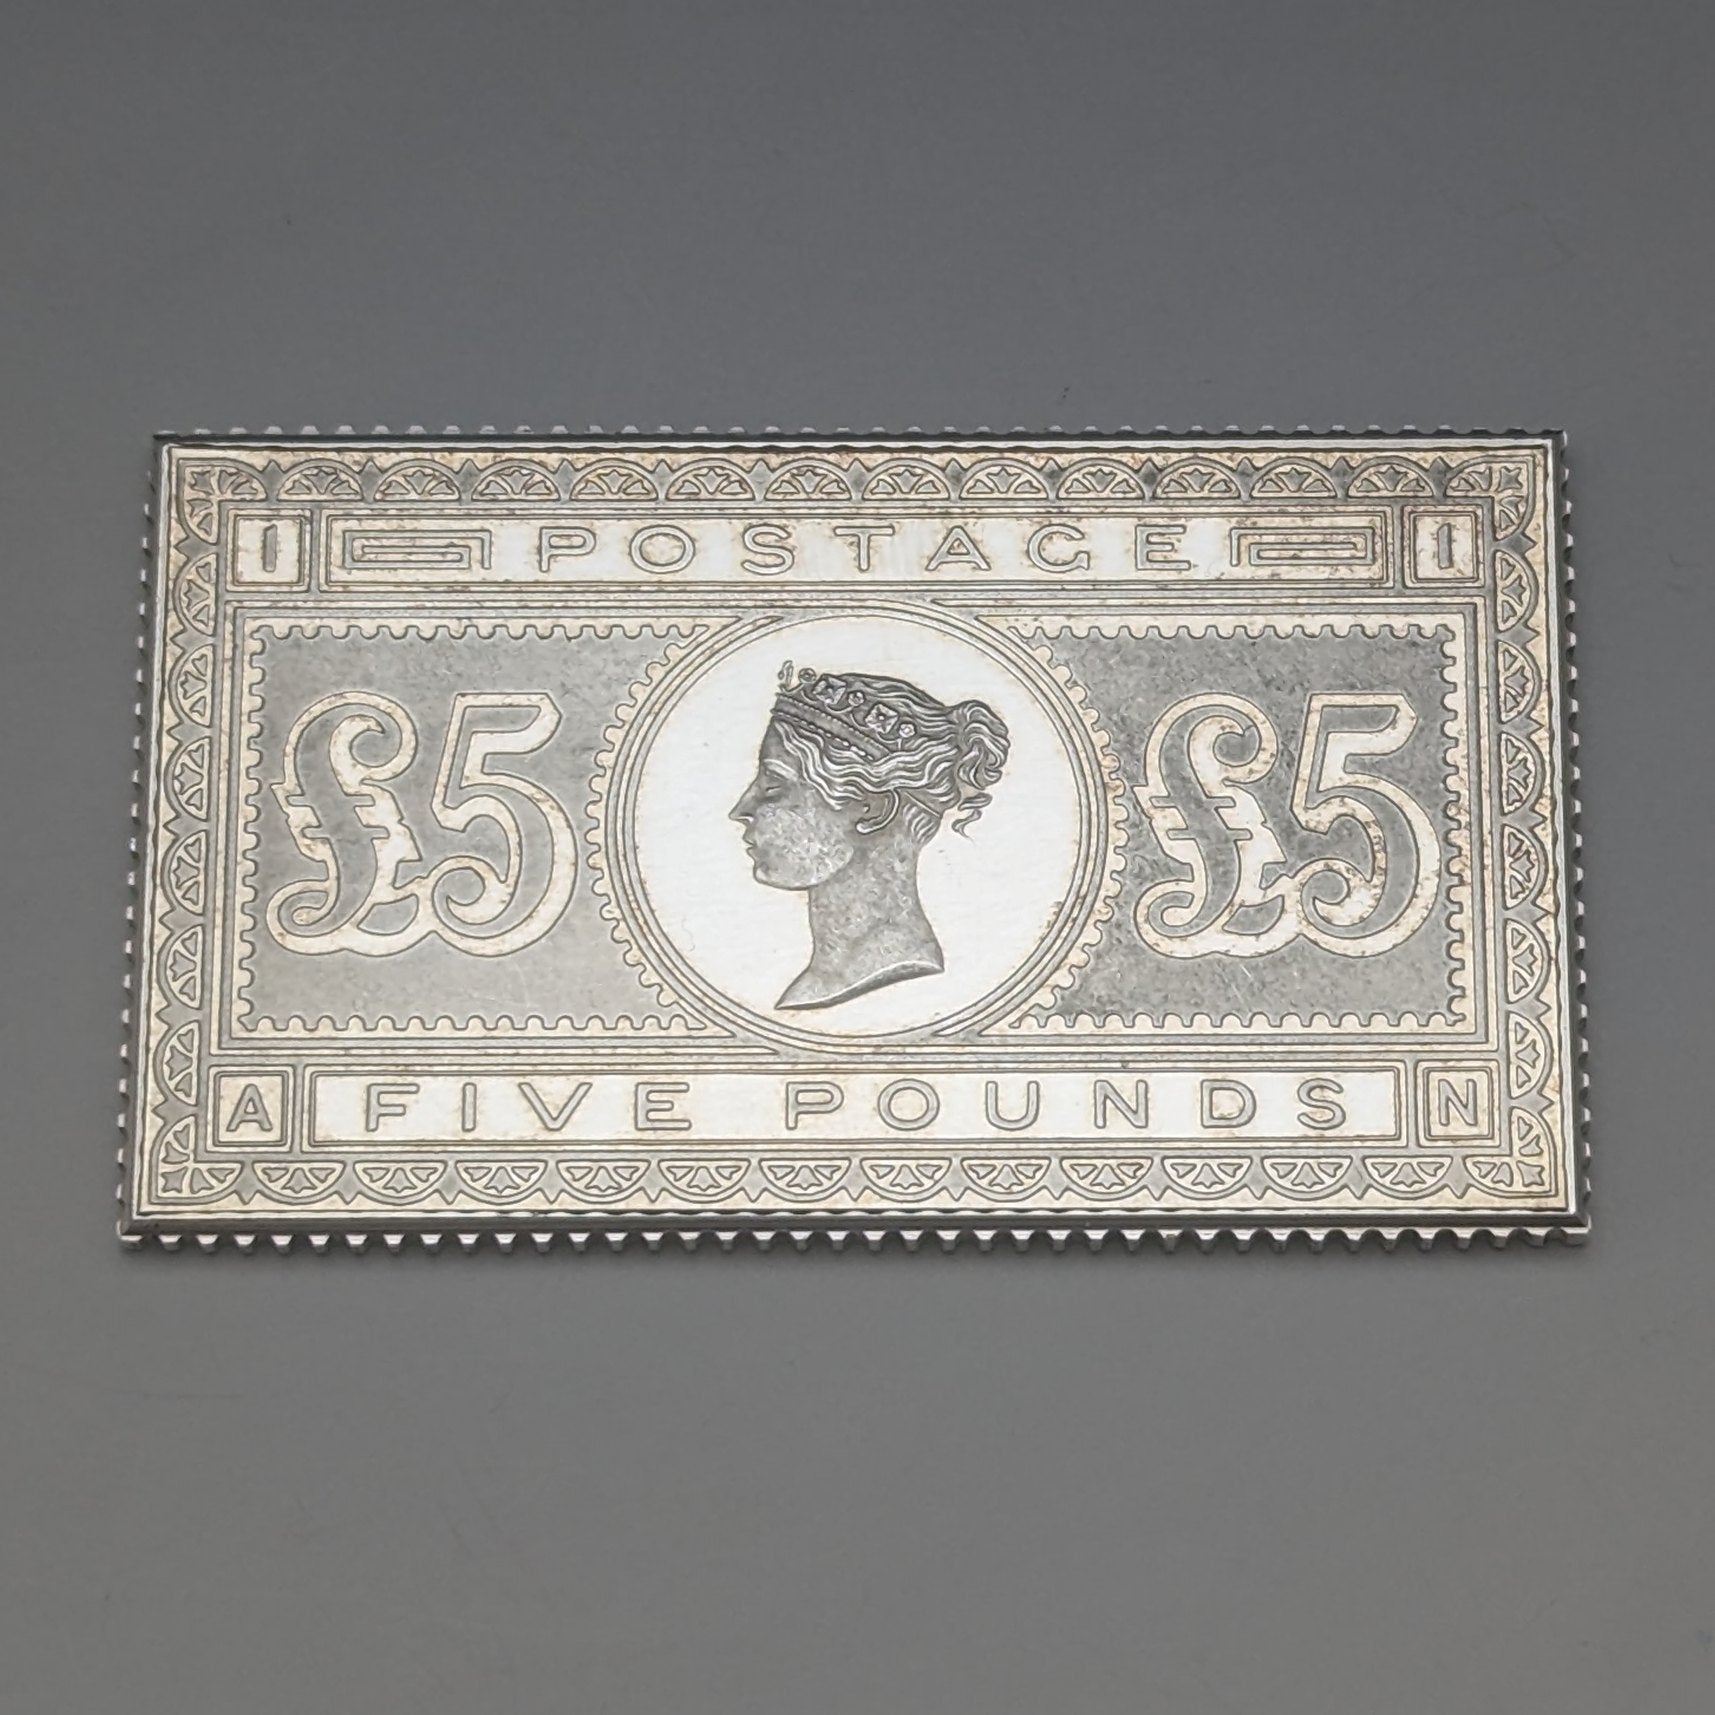 1977年 エリザベスⅡ世 戴冠25周年ジュビリー 純銀製 5ポンド切手レプリカ 40g